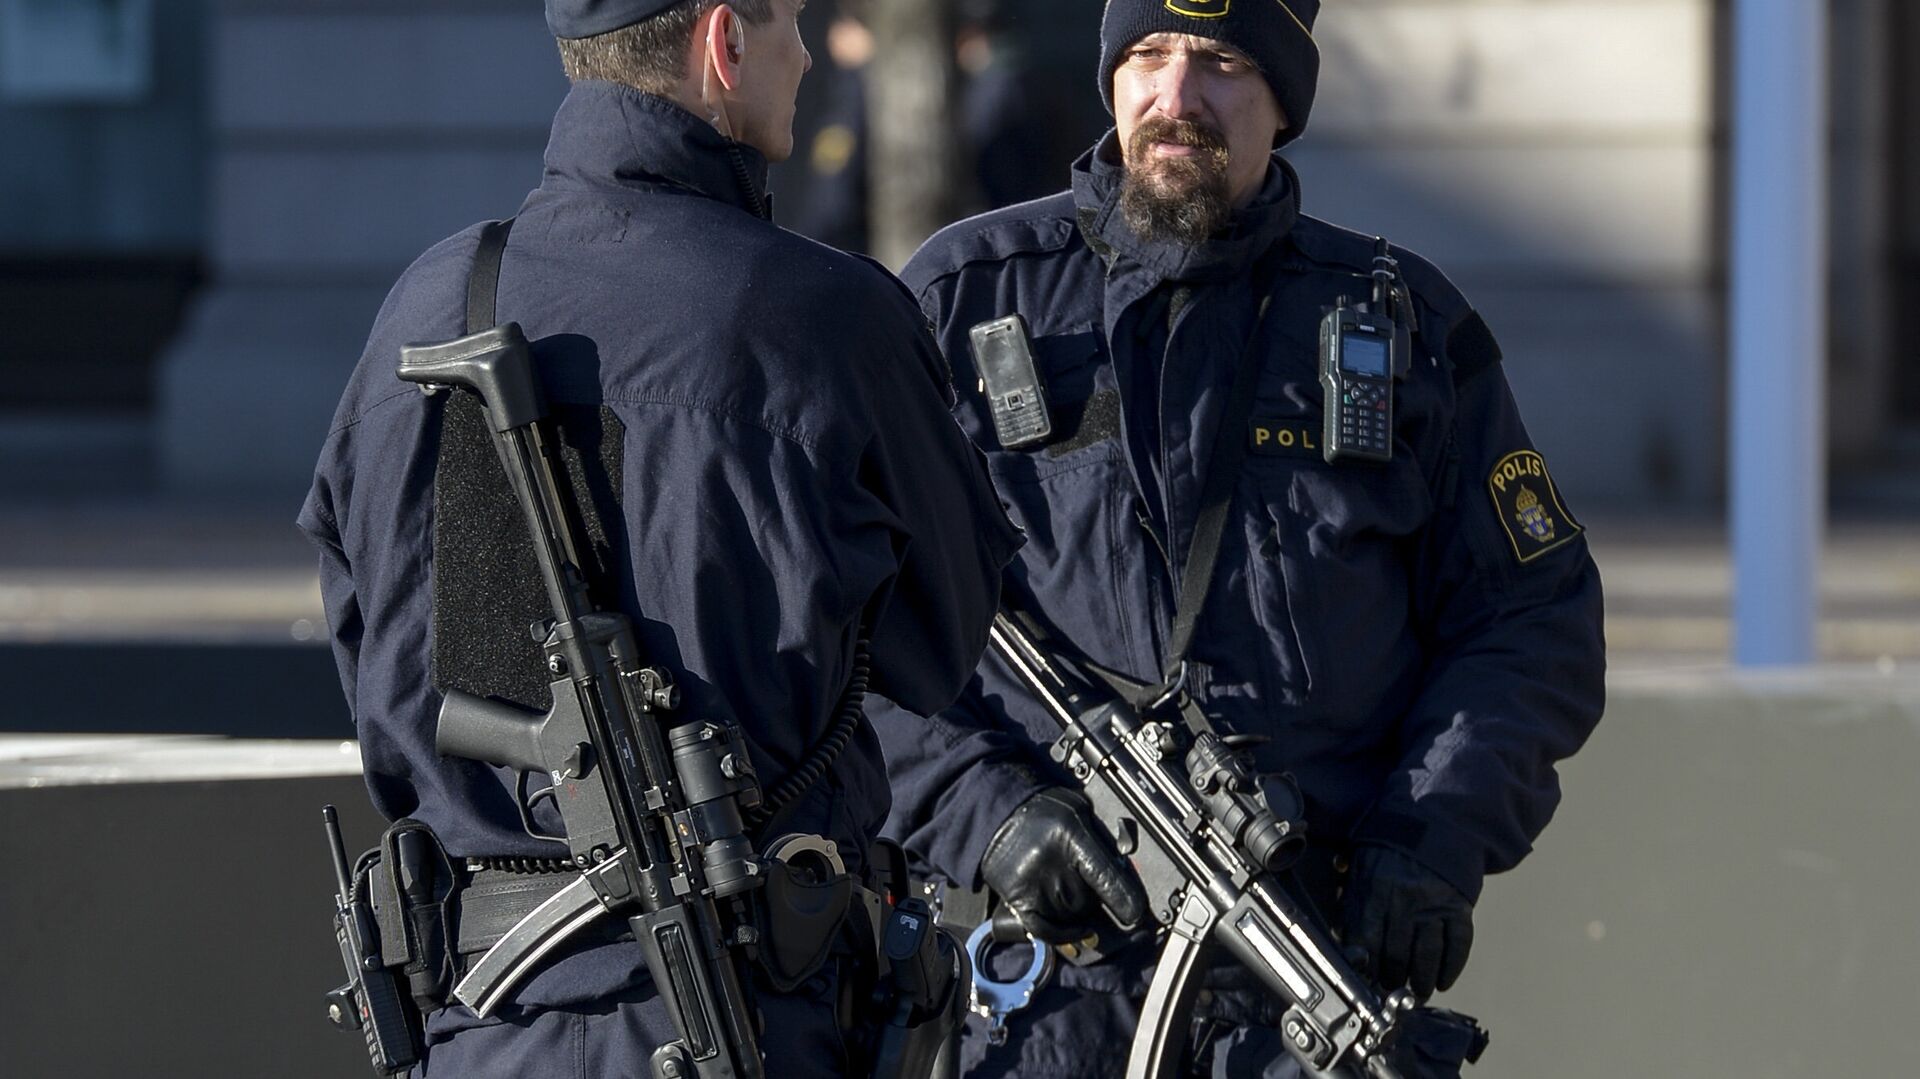 Вооруженные сотрудники полиции в центре Стокгольма, Швеция. Архивное фото - РИА Новости, 1920, 19.12.2017